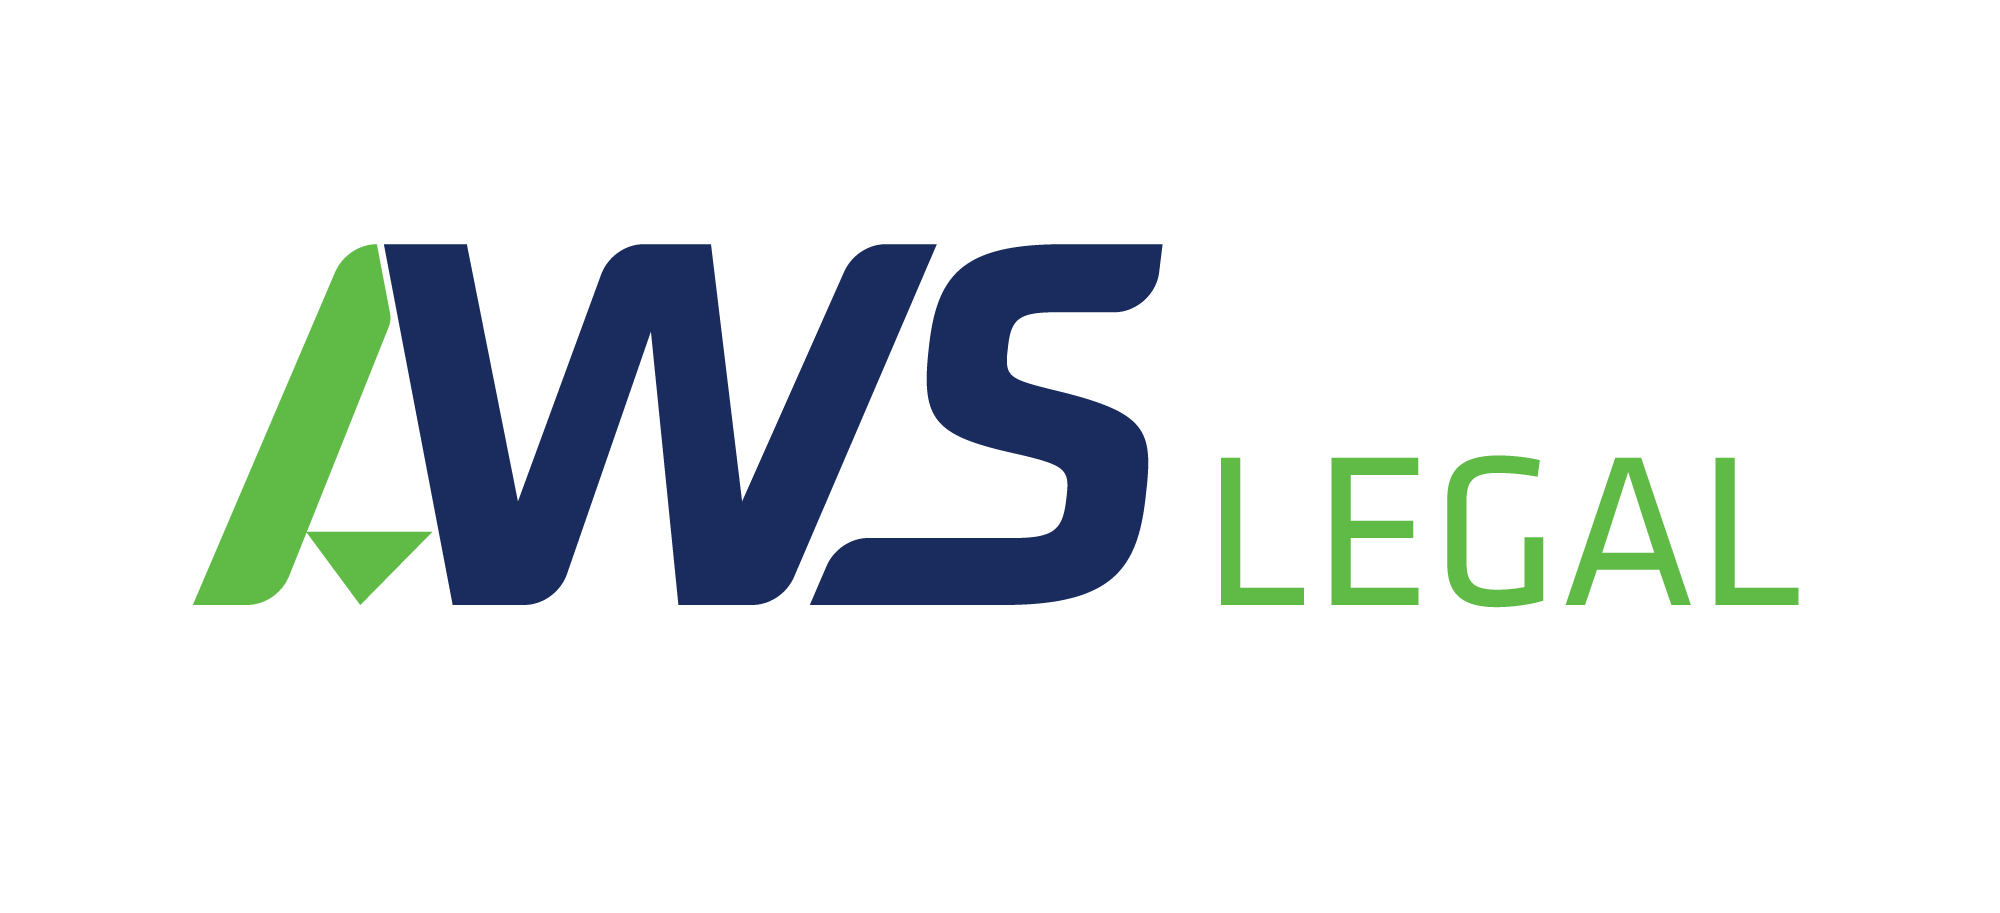 AWS Legal logo